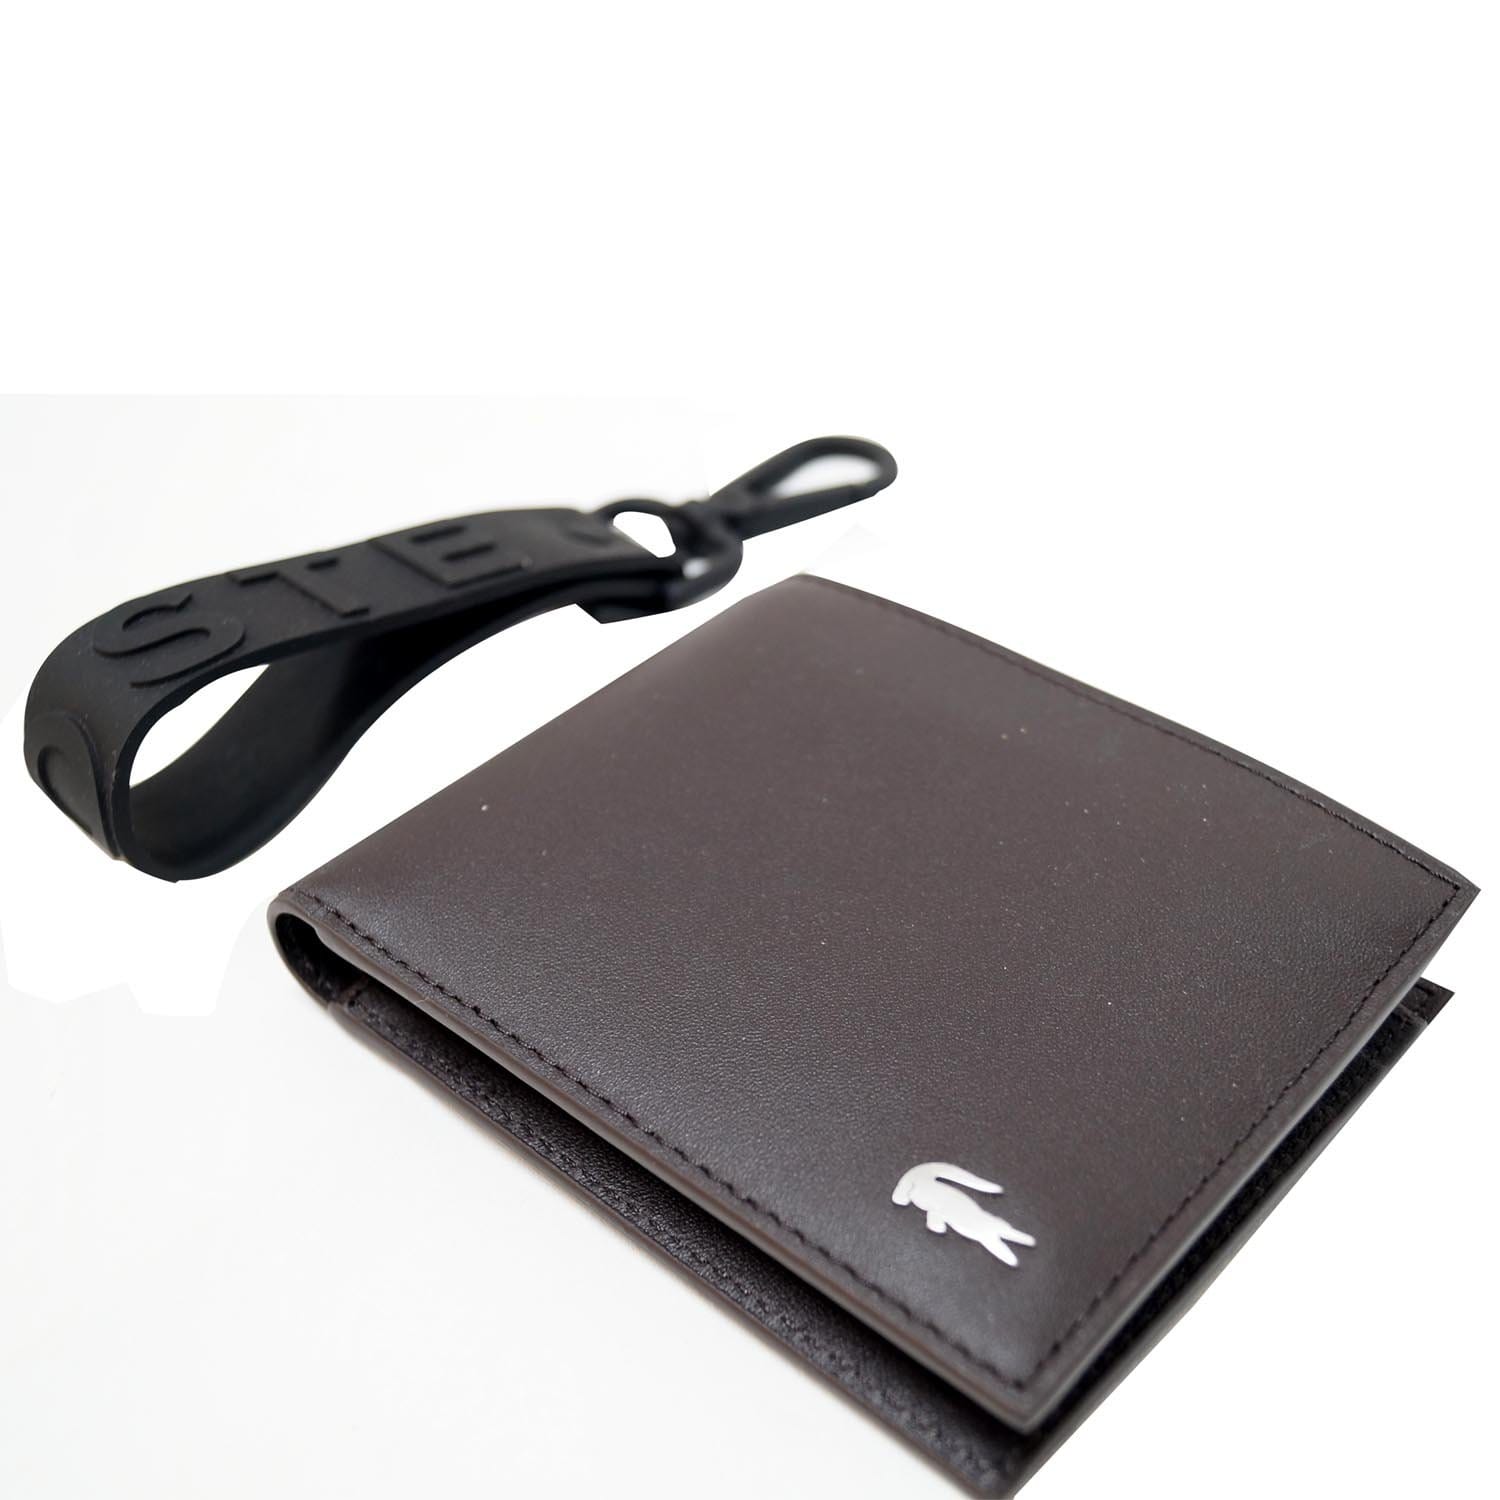 Skrøbelig Fredag frugthave Lacoste Men's Fitzgerald Leather Wallet Key Chain Set-US